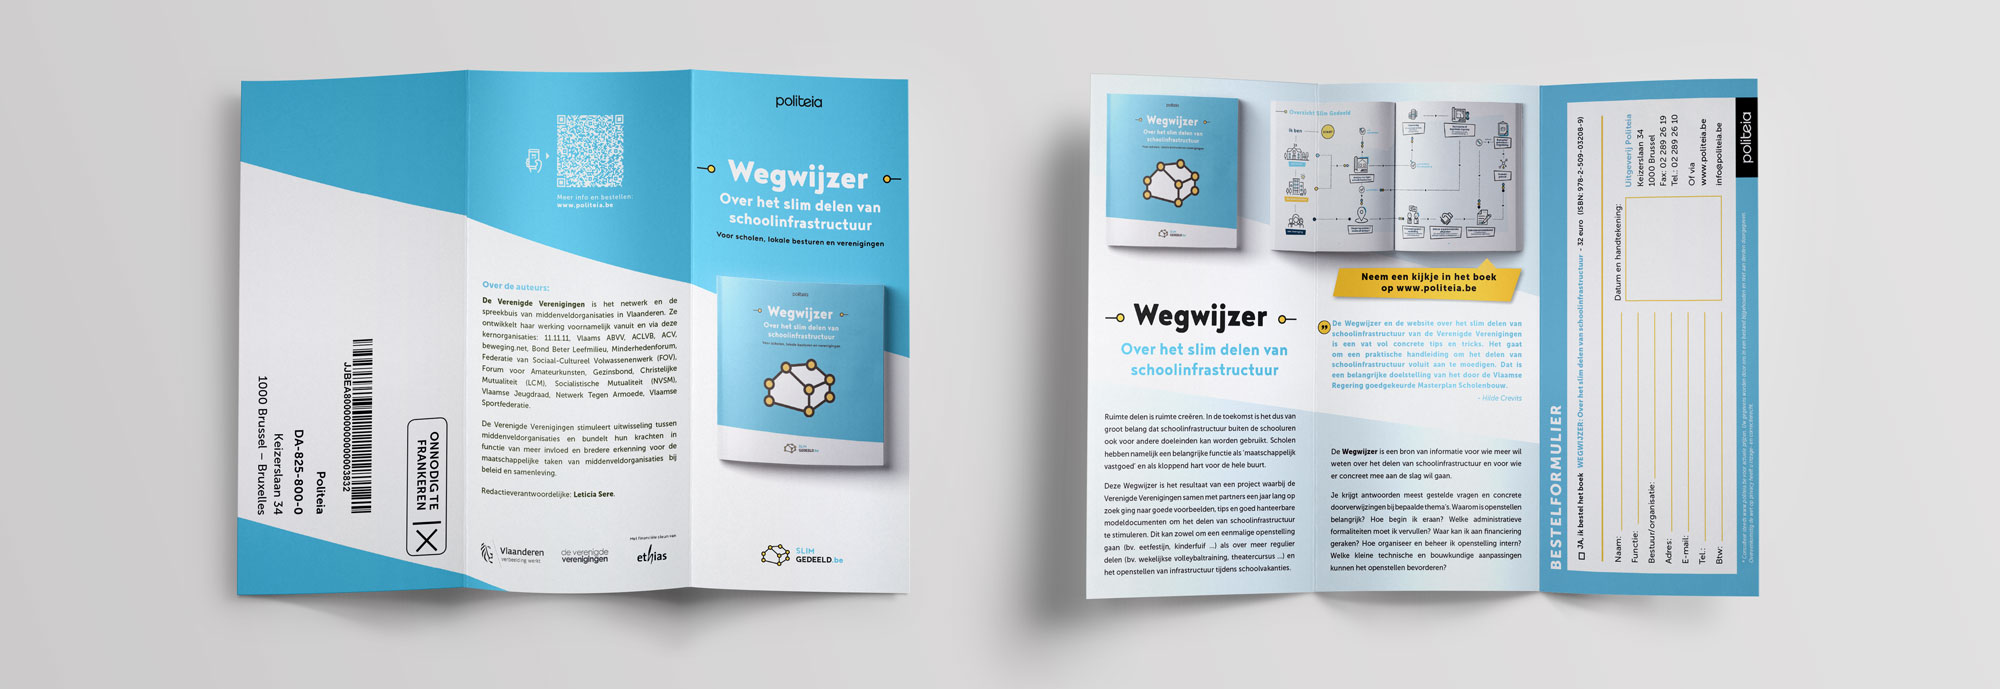 Greyclouds.be - Bert Blondeel | Design for print: Uitgererij Politeia - Flyer 'Wegwijzer'